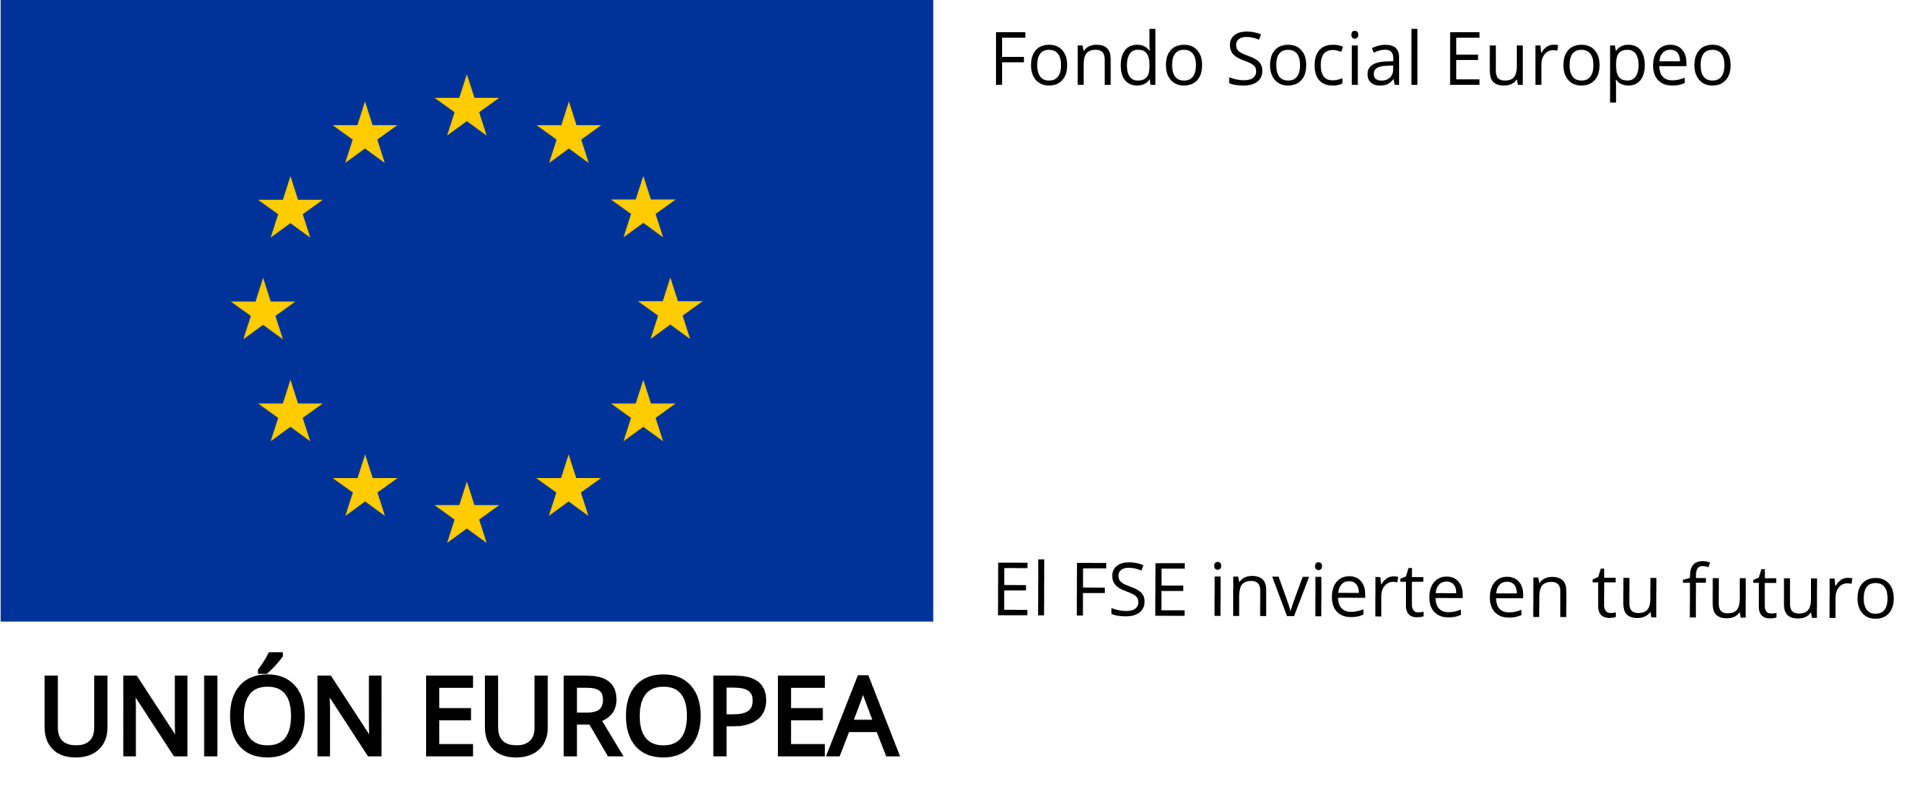 fondo social europeo